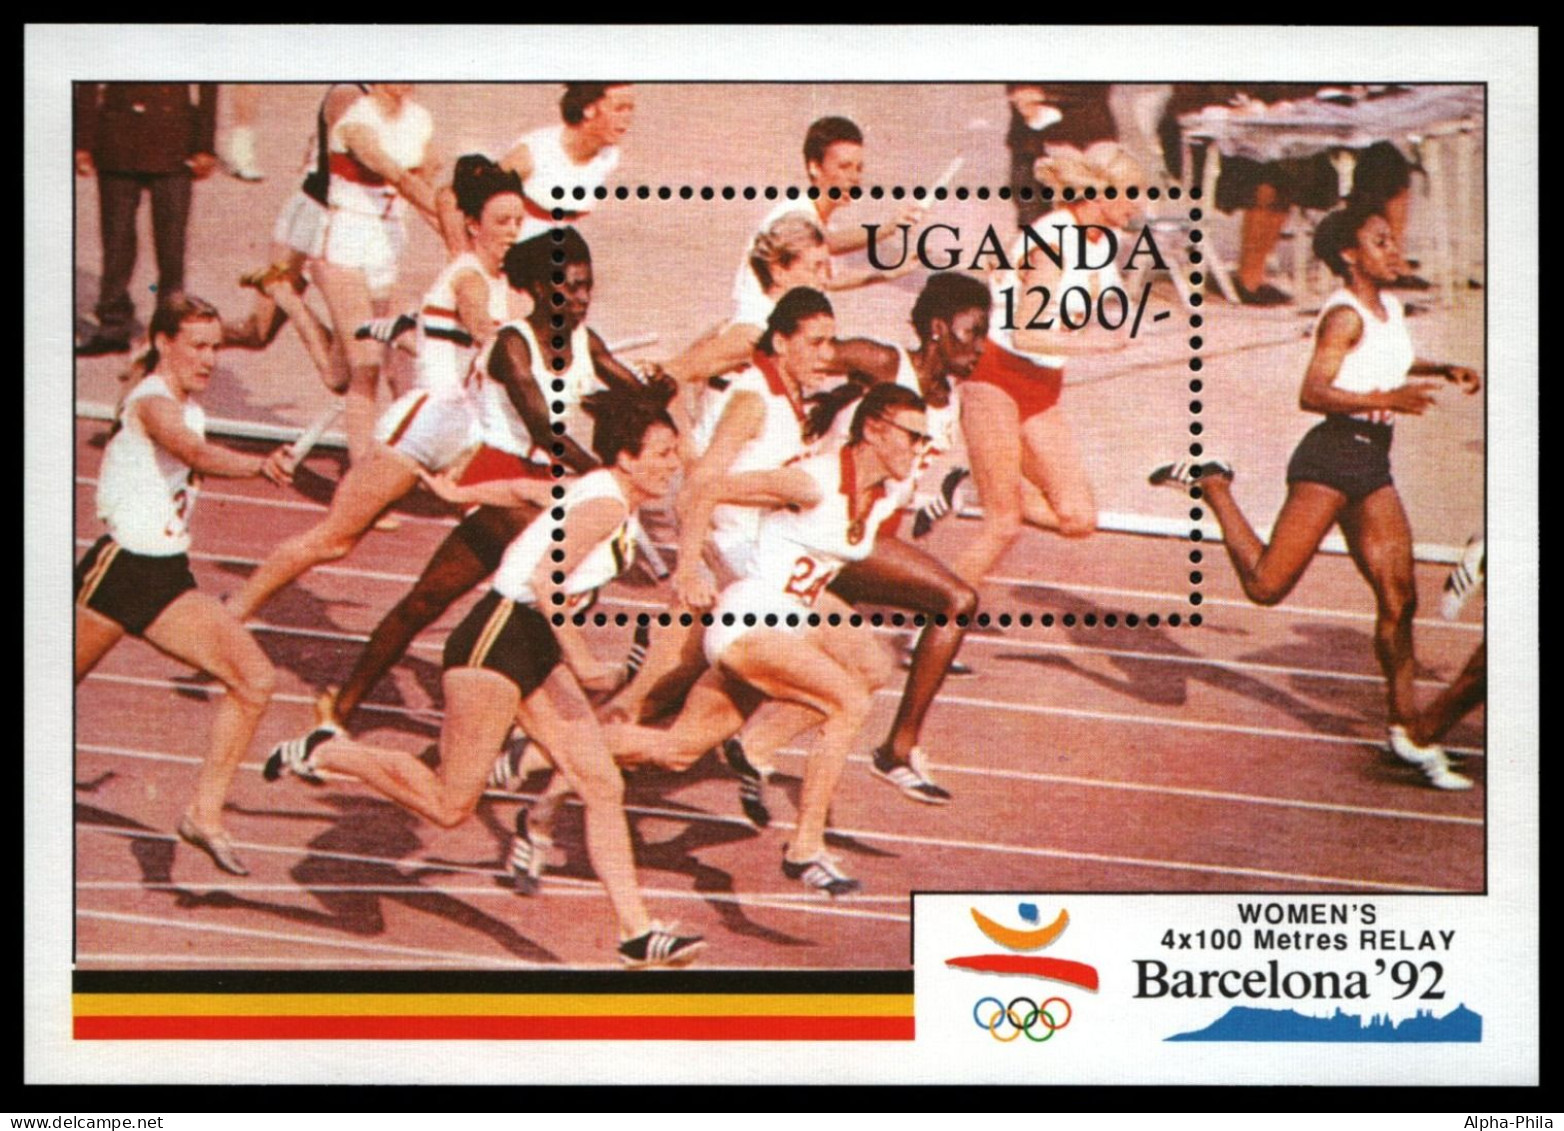 Uganda 1991 - Mi-Nr. Block 131 ** - MNH - Olympia Barcelona - Ouganda (1962-...)